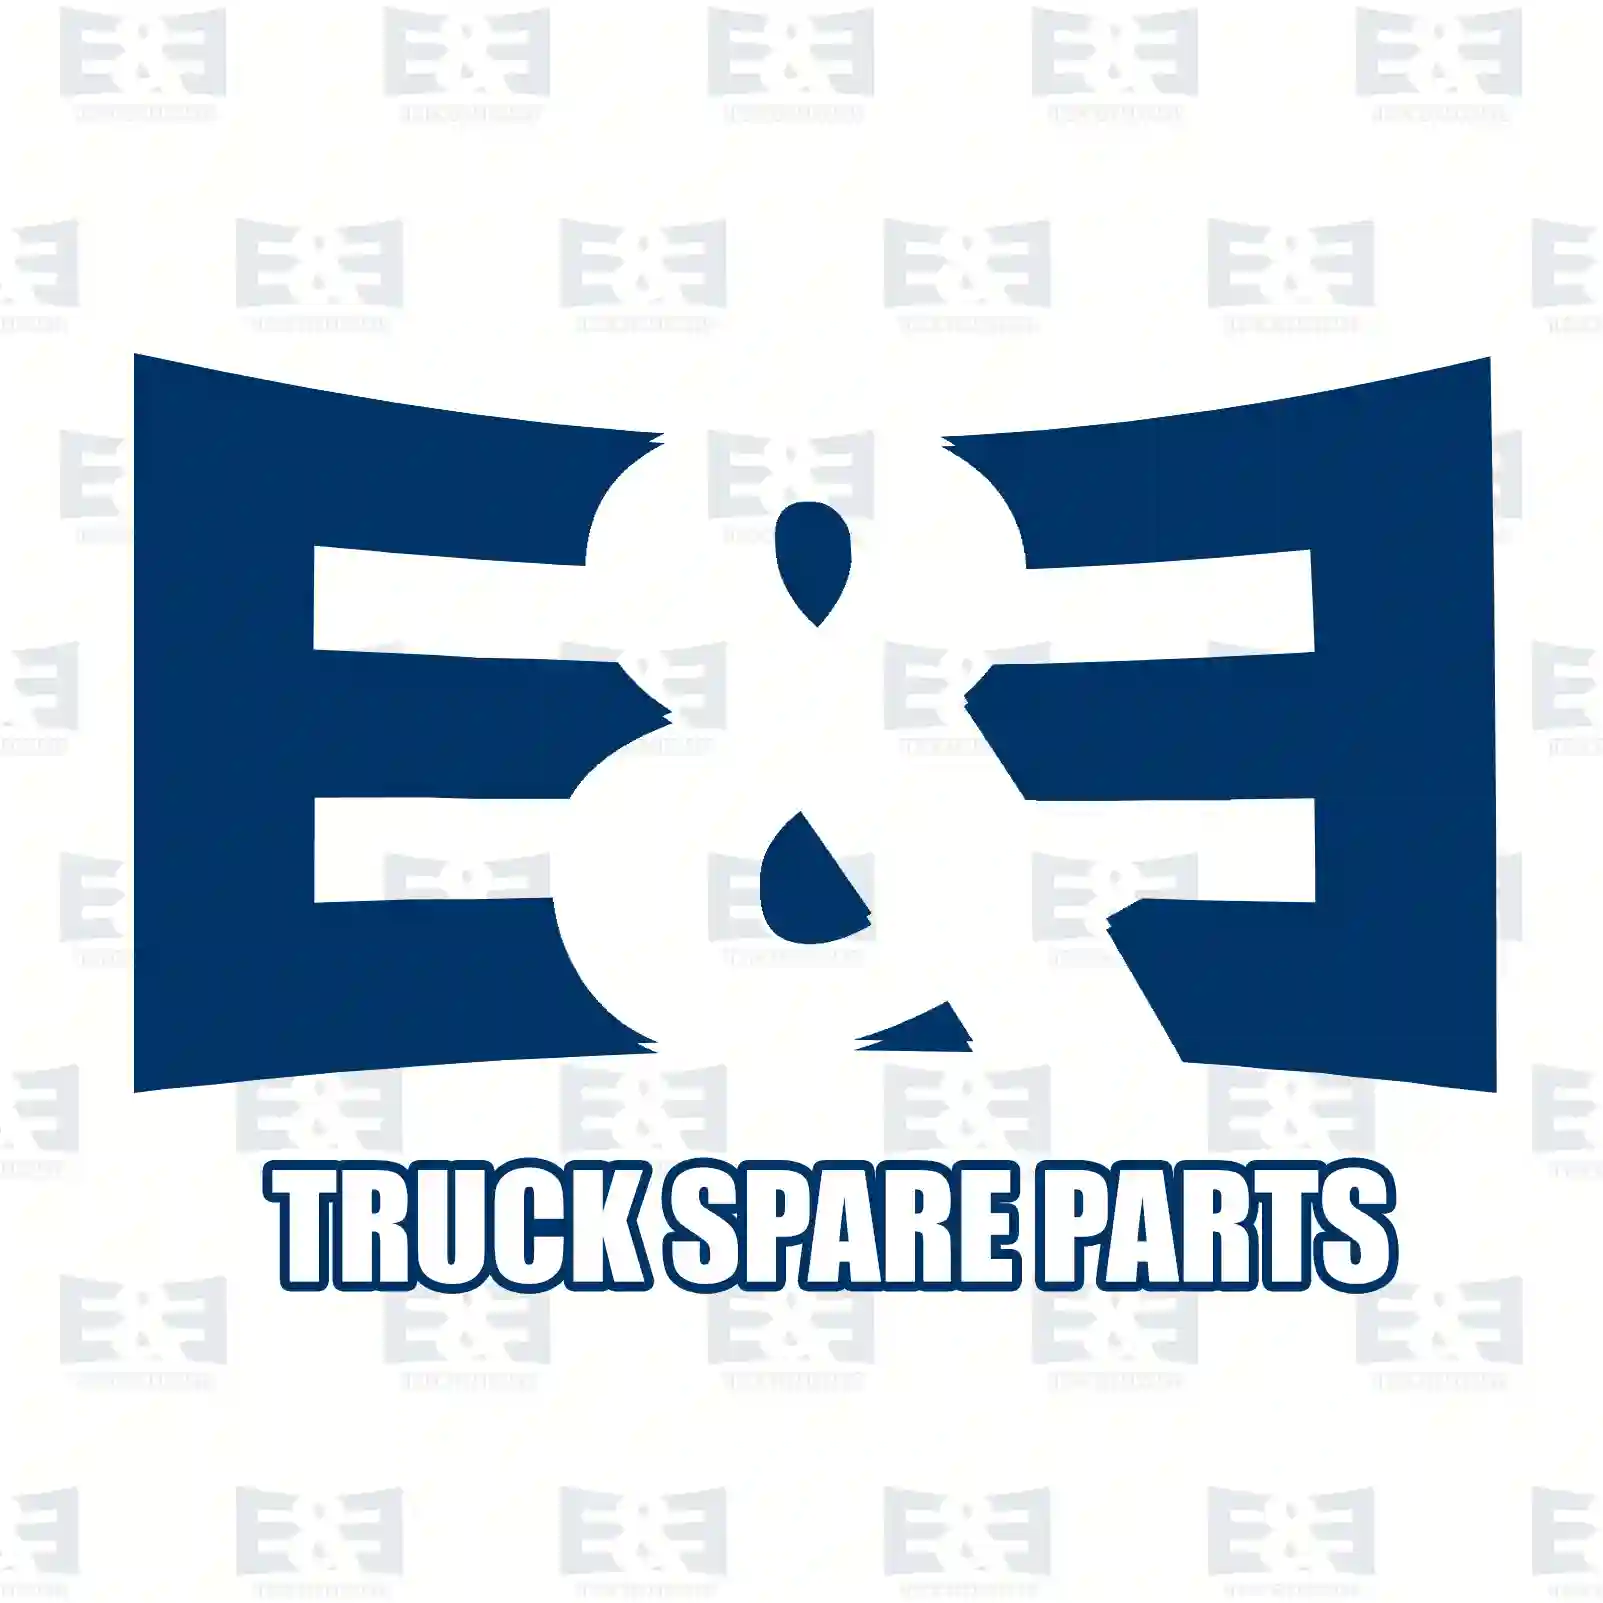 Timing chain kit, 2E2208453, 1020501011S1 ||  2E2208453 E&E Truck Spare Parts | Truck Spare Parts, Auotomotive Spare Parts Timing chain kit, 2E2208453, 1020501011S1 ||  2E2208453 E&E Truck Spare Parts | Truck Spare Parts, Auotomotive Spare Parts